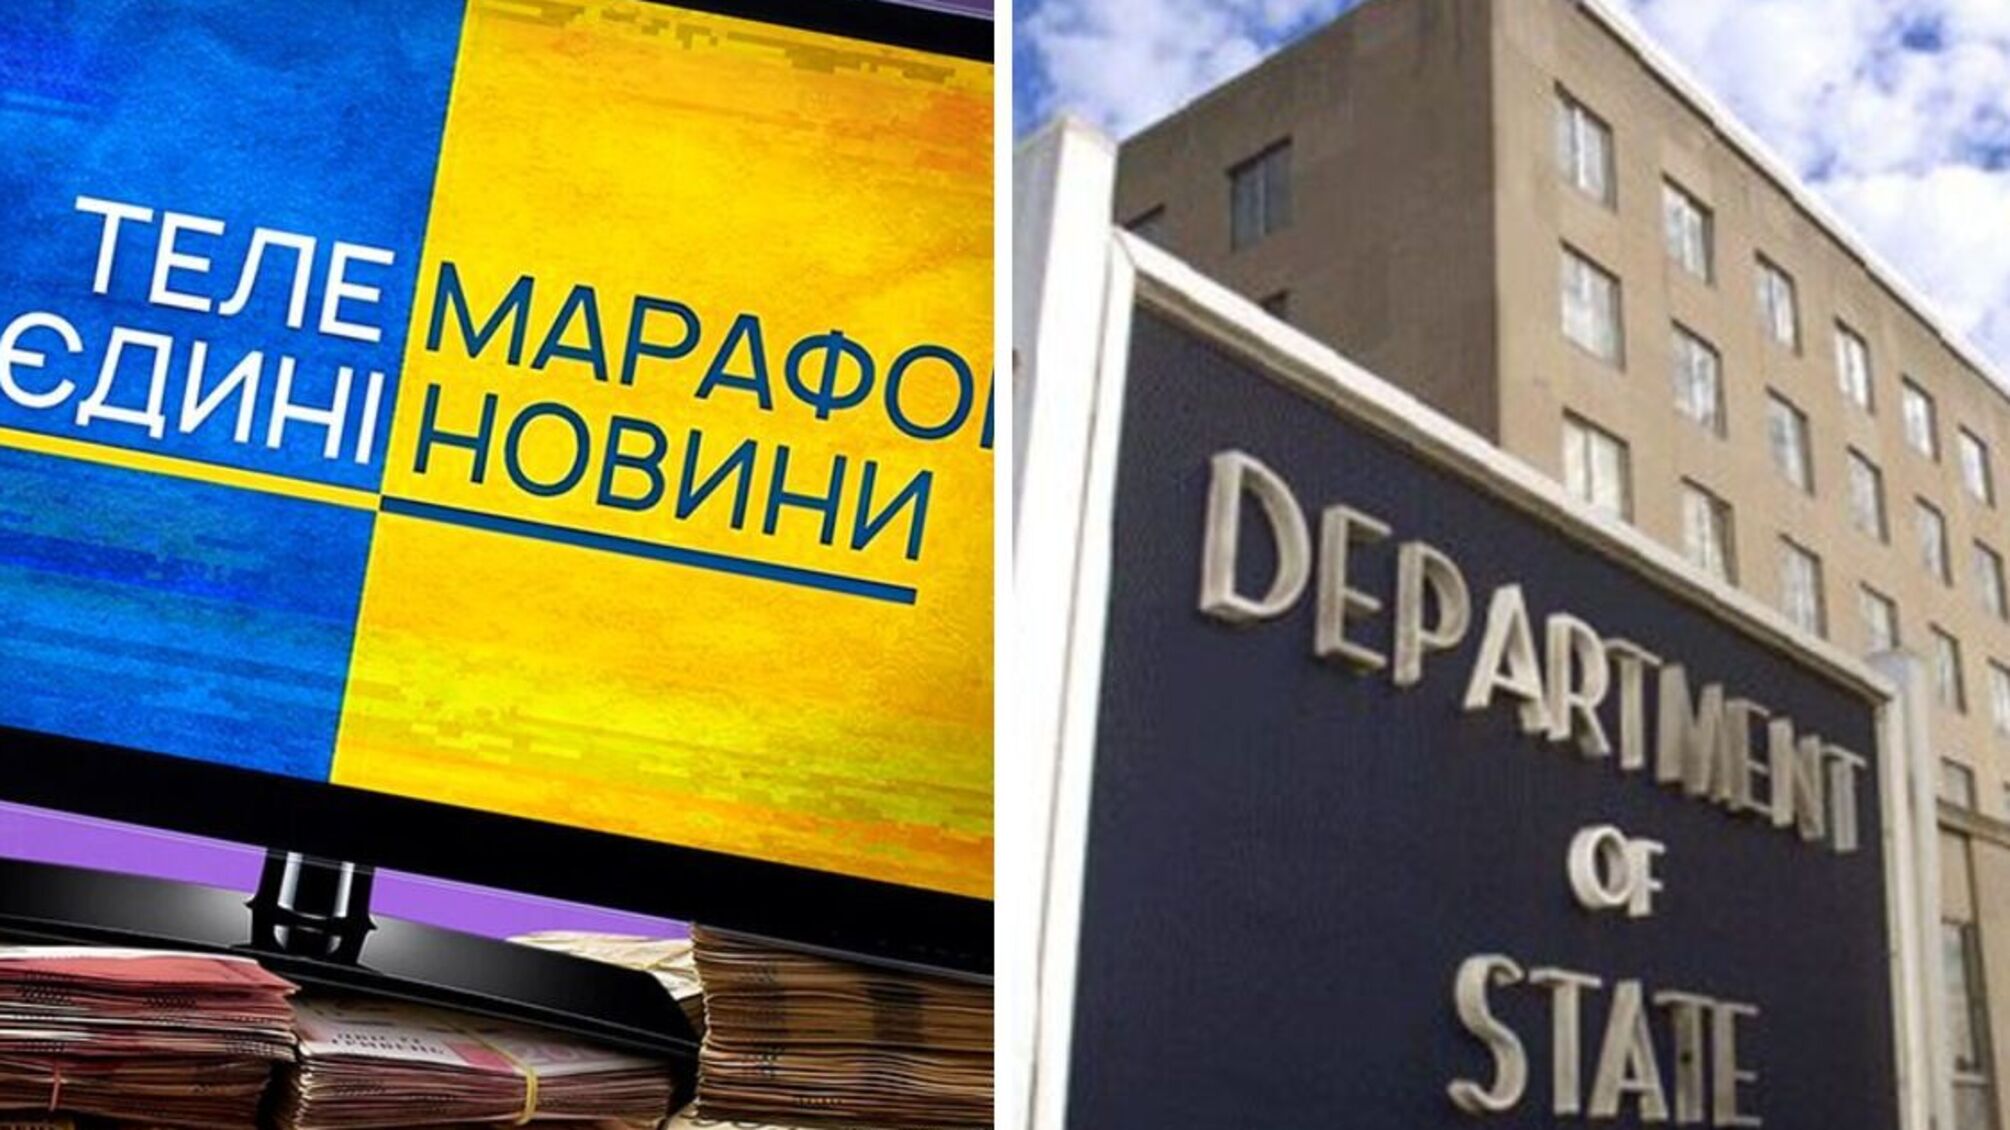 Національний телемарафон потрапив до звіту Держдепу США через порушення прав людини в Україні